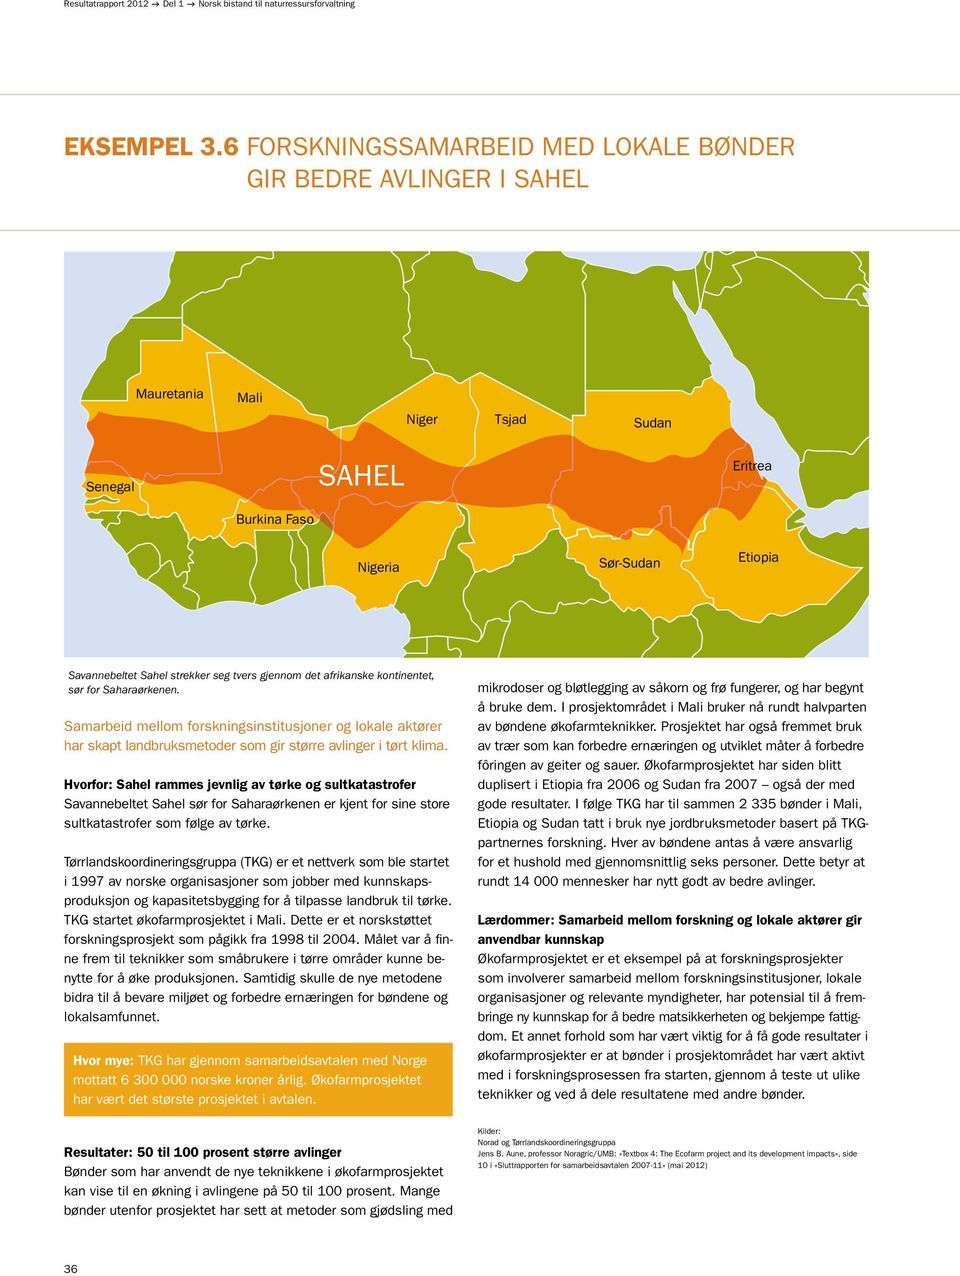 tvers gjennom det afrikanske kontinentet, sør for Saharaørkenen. Samarbeid mellom forskningsinstitusjoner og lokale aktører har skapt landbruksmetoder som gir større avlinger i tørt klima.